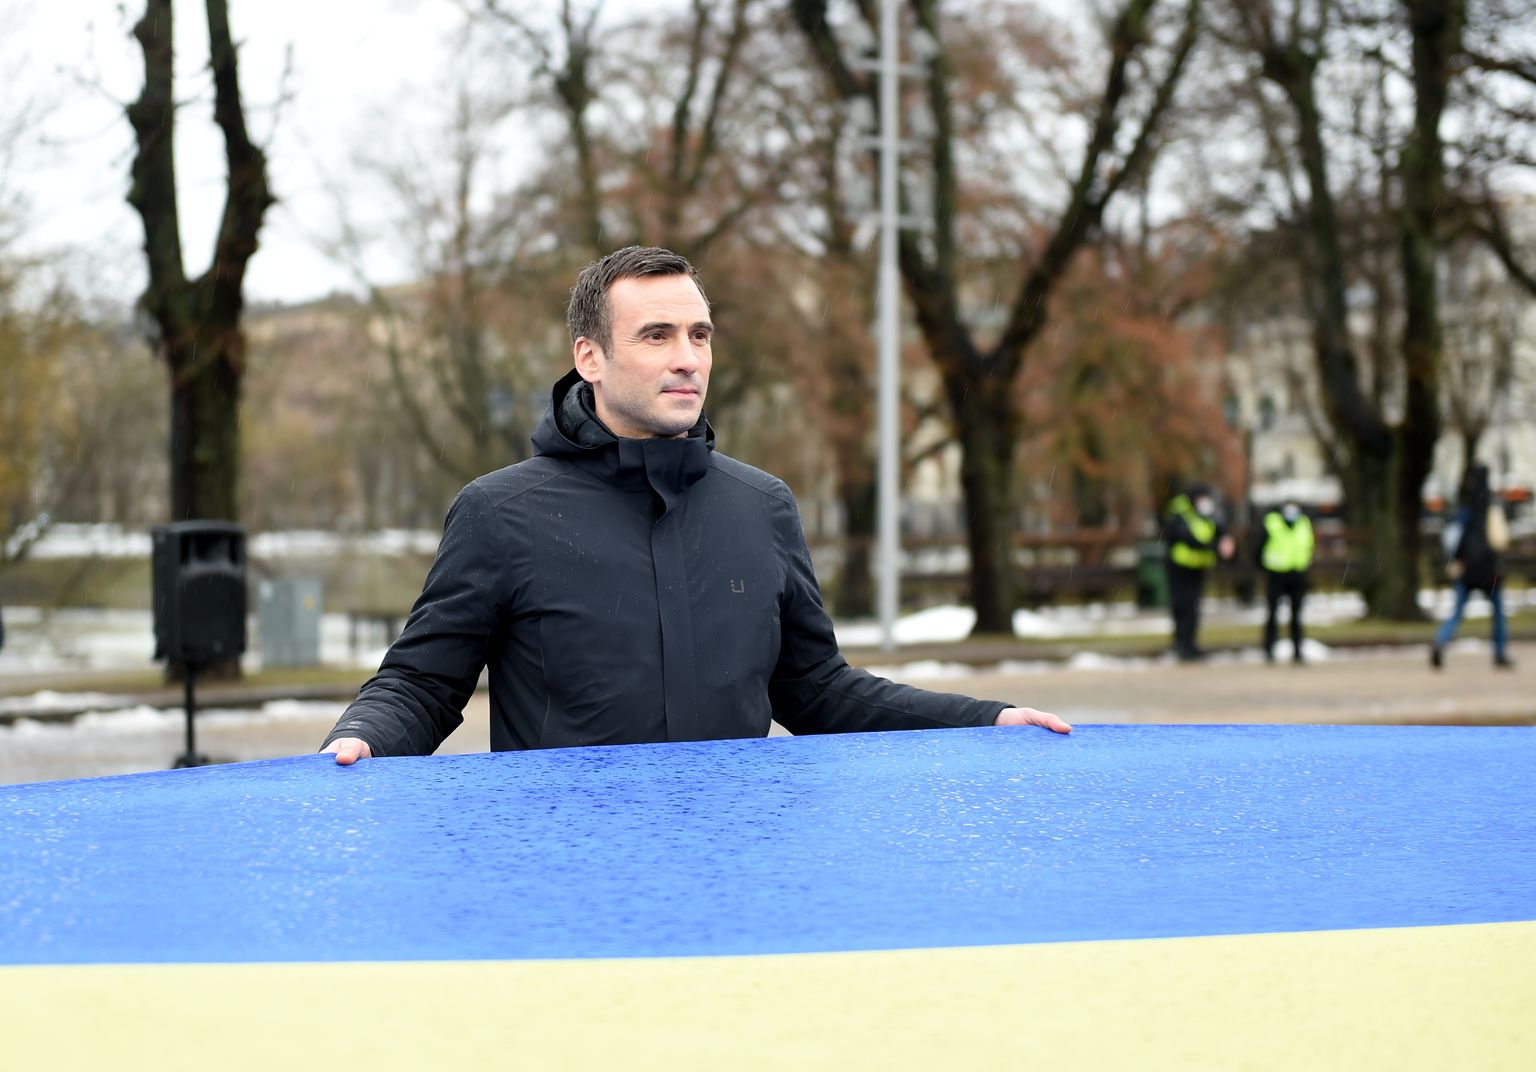 Rīgas mērs Mārtiņš Staķis piedalās akcijā "Karogs par mieru Ukrainā" pie Brīvības pieminekļa, kur tiek izritināts lielais Ukrainas karogs, atzīmējot "Ukrainas nedēļu" un paužot atbalstu šīs valsts suverenitātei.